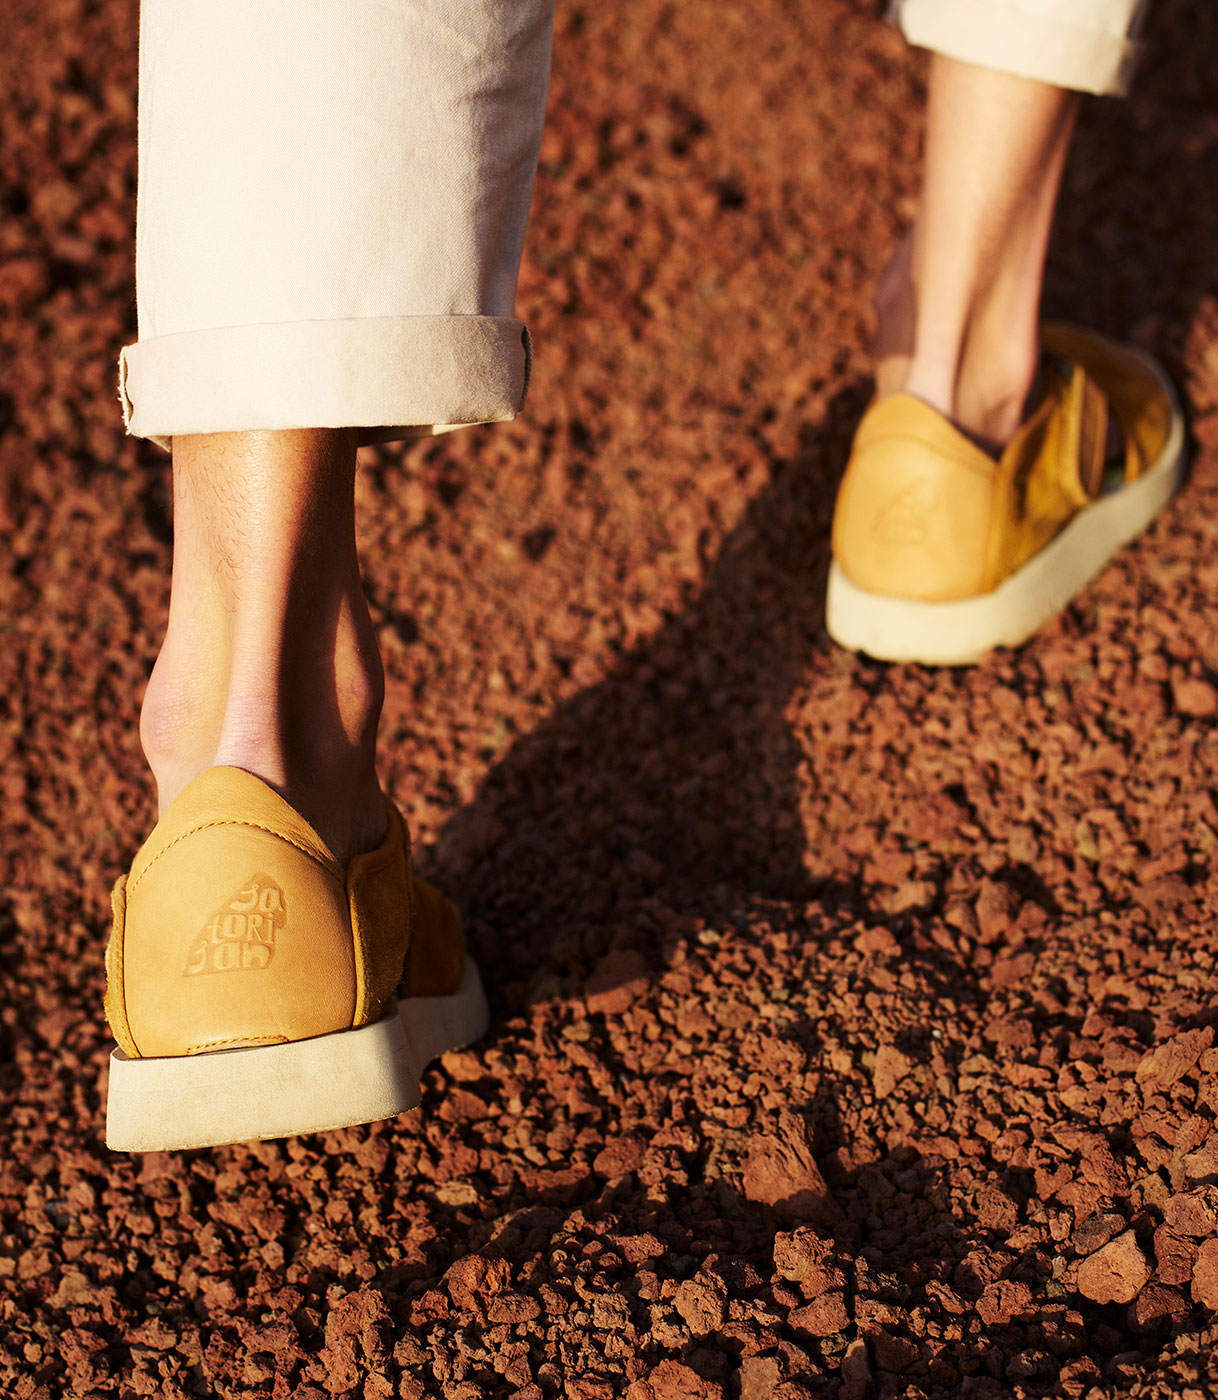 Detalle de los zapatos de Satorisan caminando sobre tierra rojiza